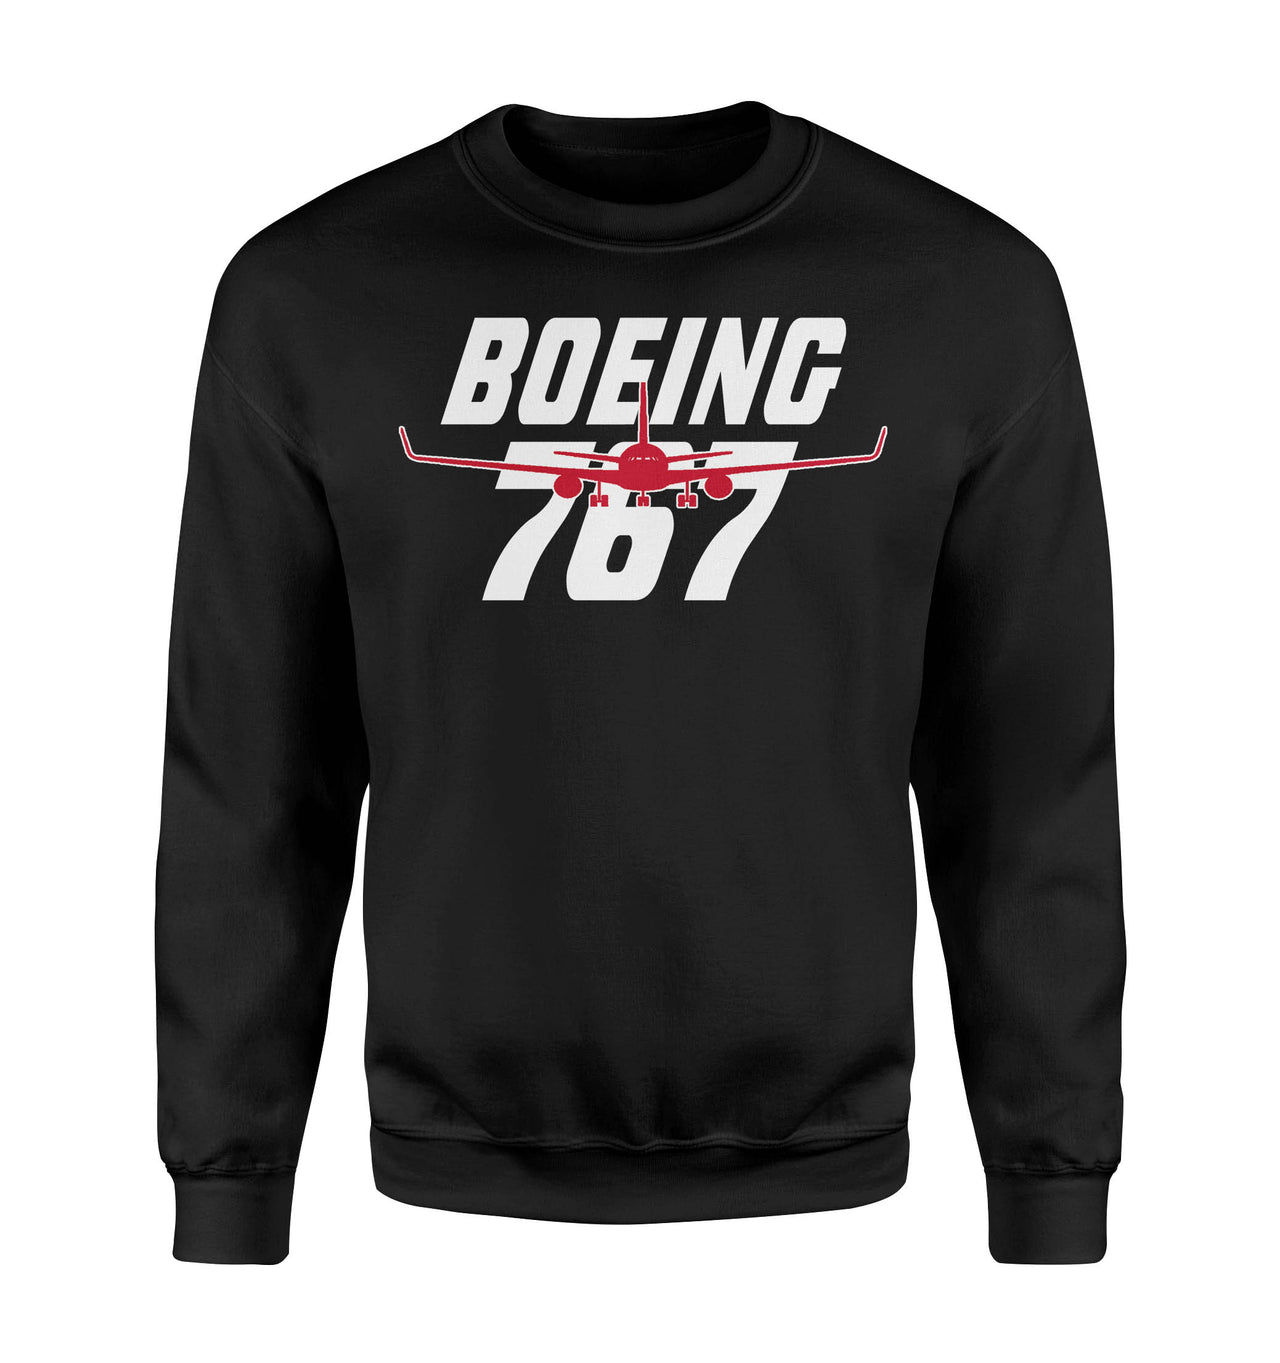 Amazing Boeing 767 Designed Sweatshirts